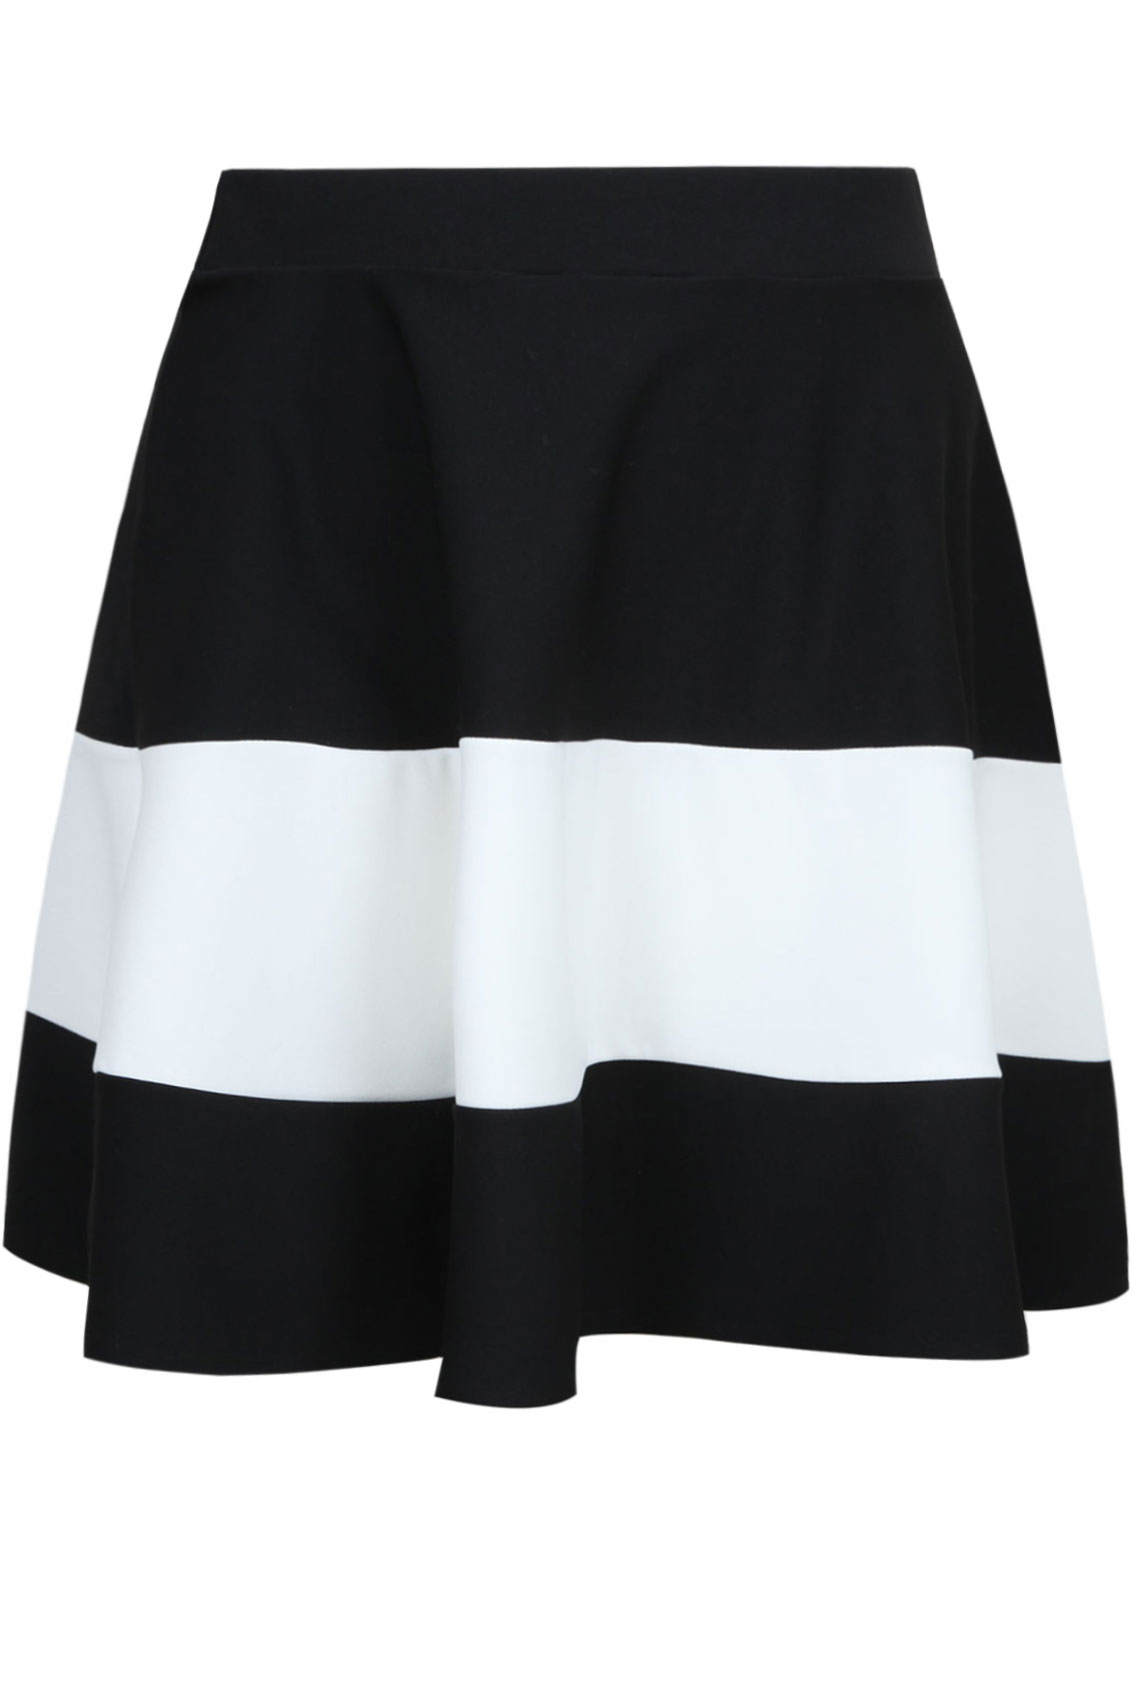 Black & White Colour Block Wide Stripe Skater Skirt Plus size 14,16,18 ...